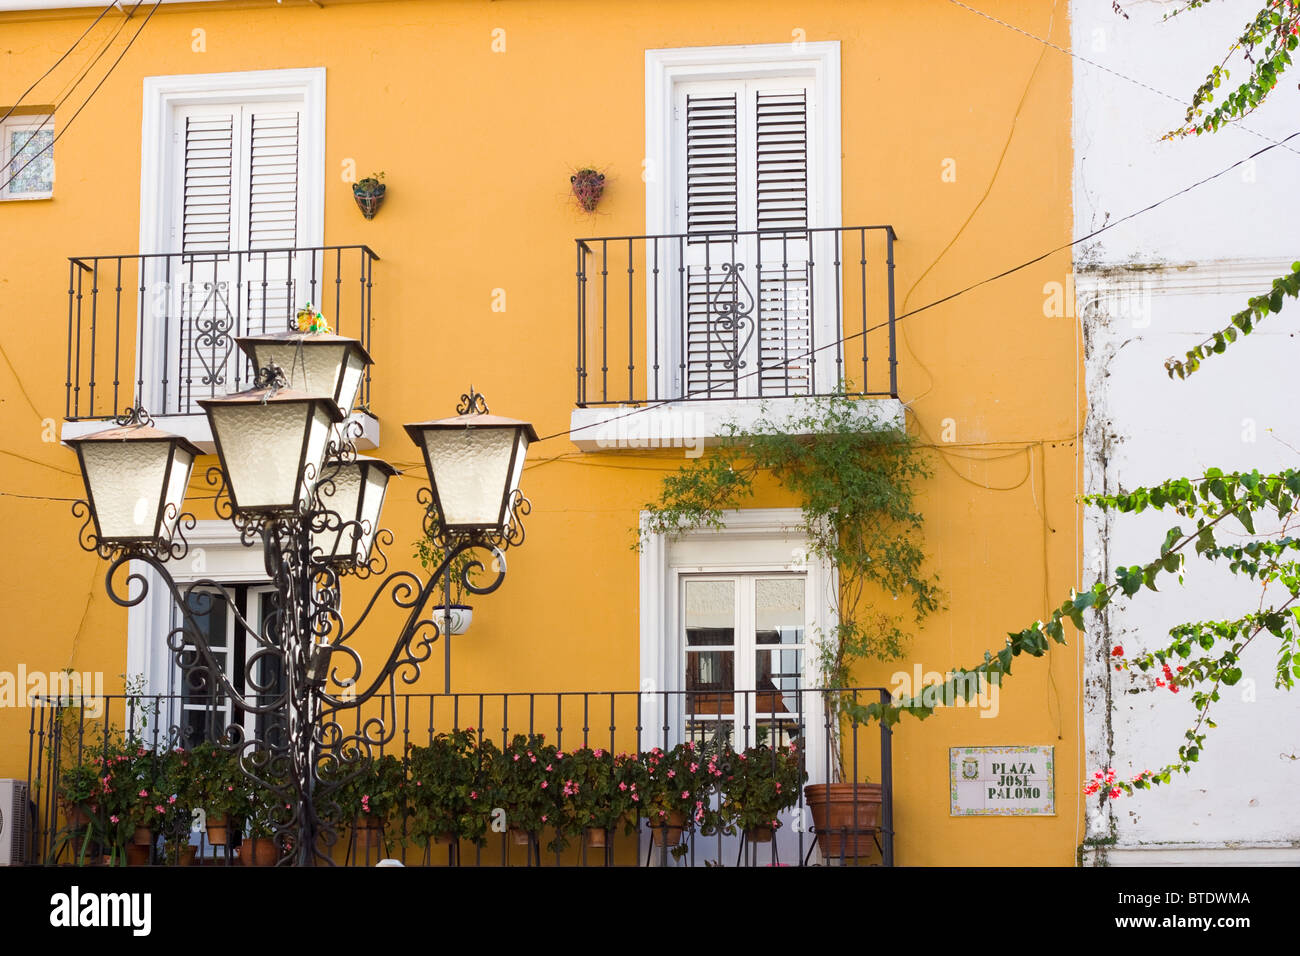 Vieux maisons espagnol dans la ville de Marbella, Espagne Banque D'Images